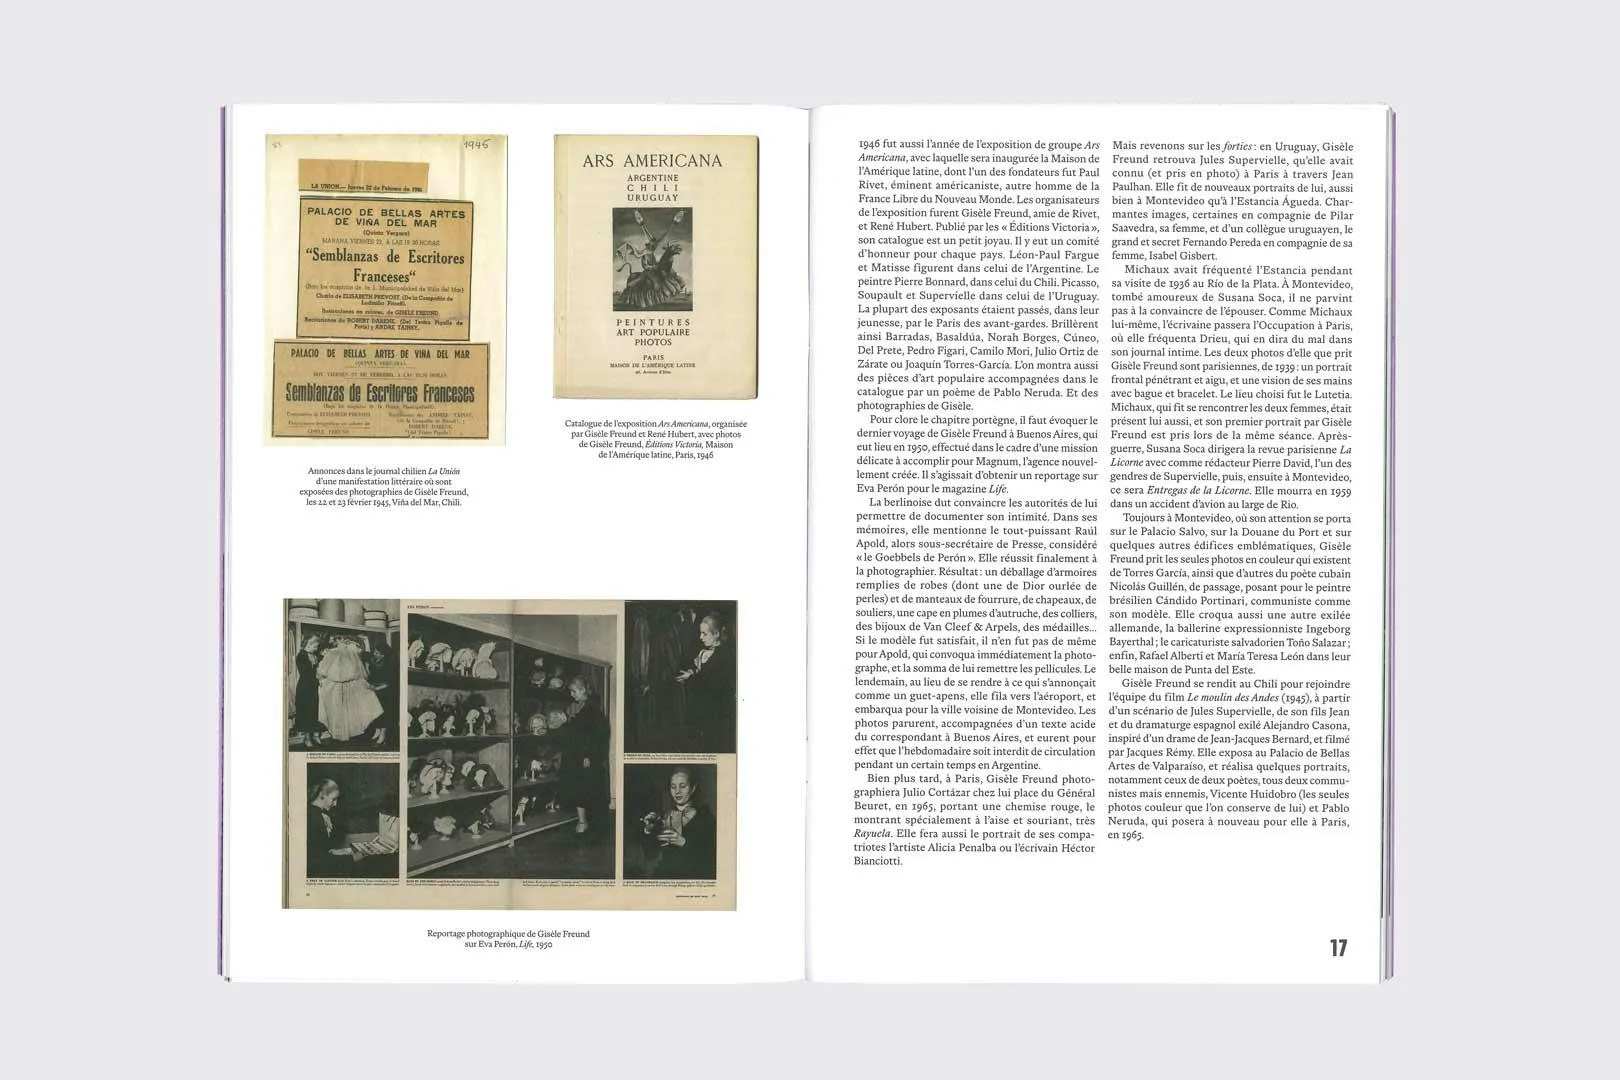 exposition Gisèle Freund – pages intérieures du catalogue